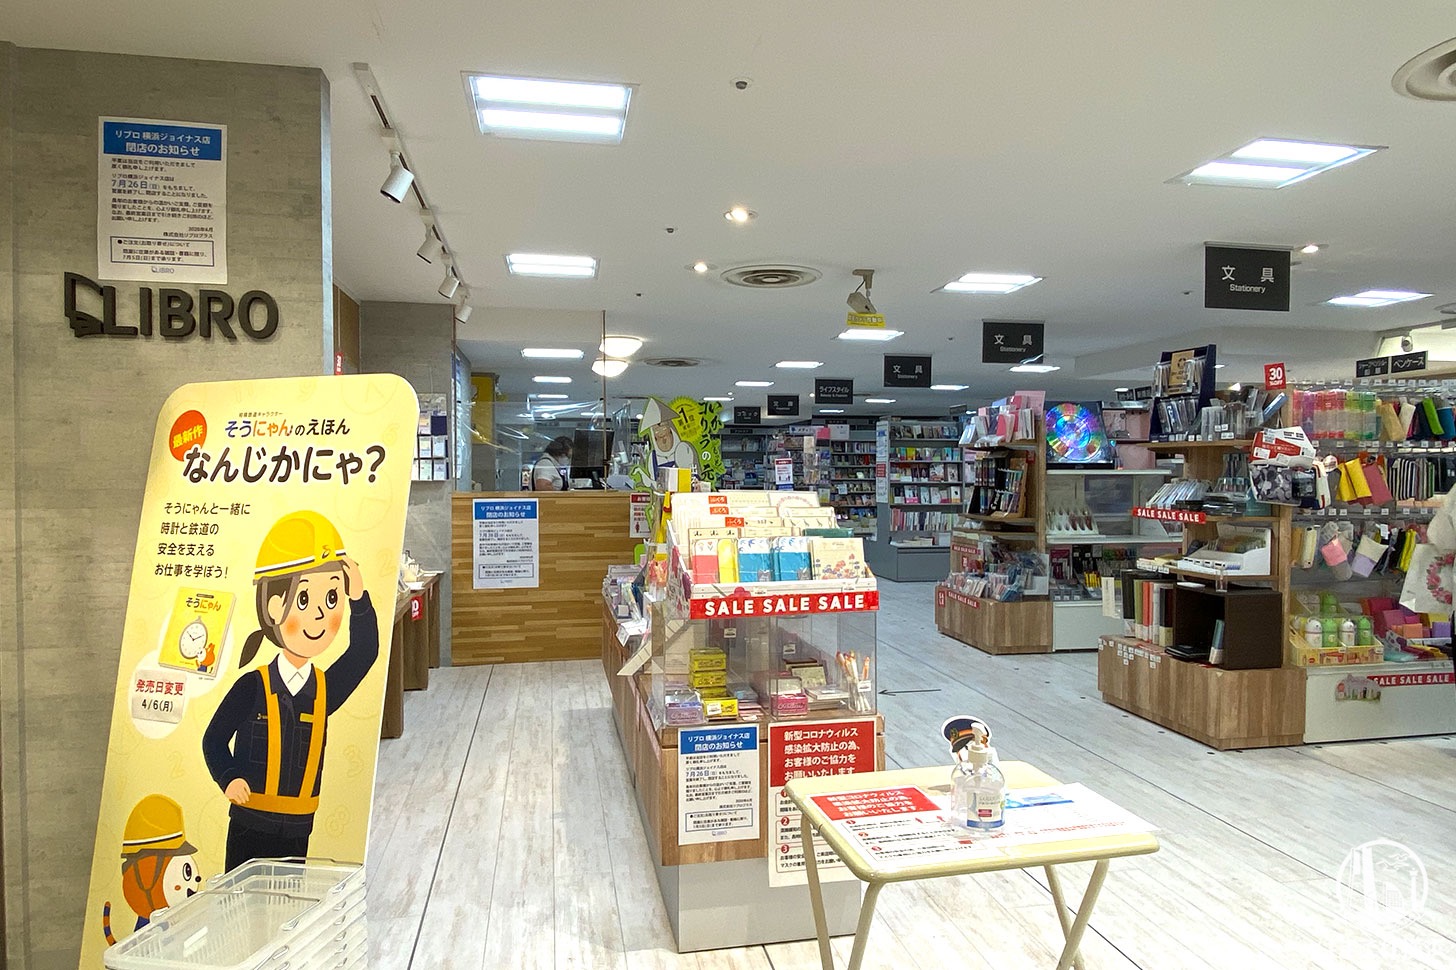 リブロ 横浜ジョイナス店、2020年7月26日をもって閉店